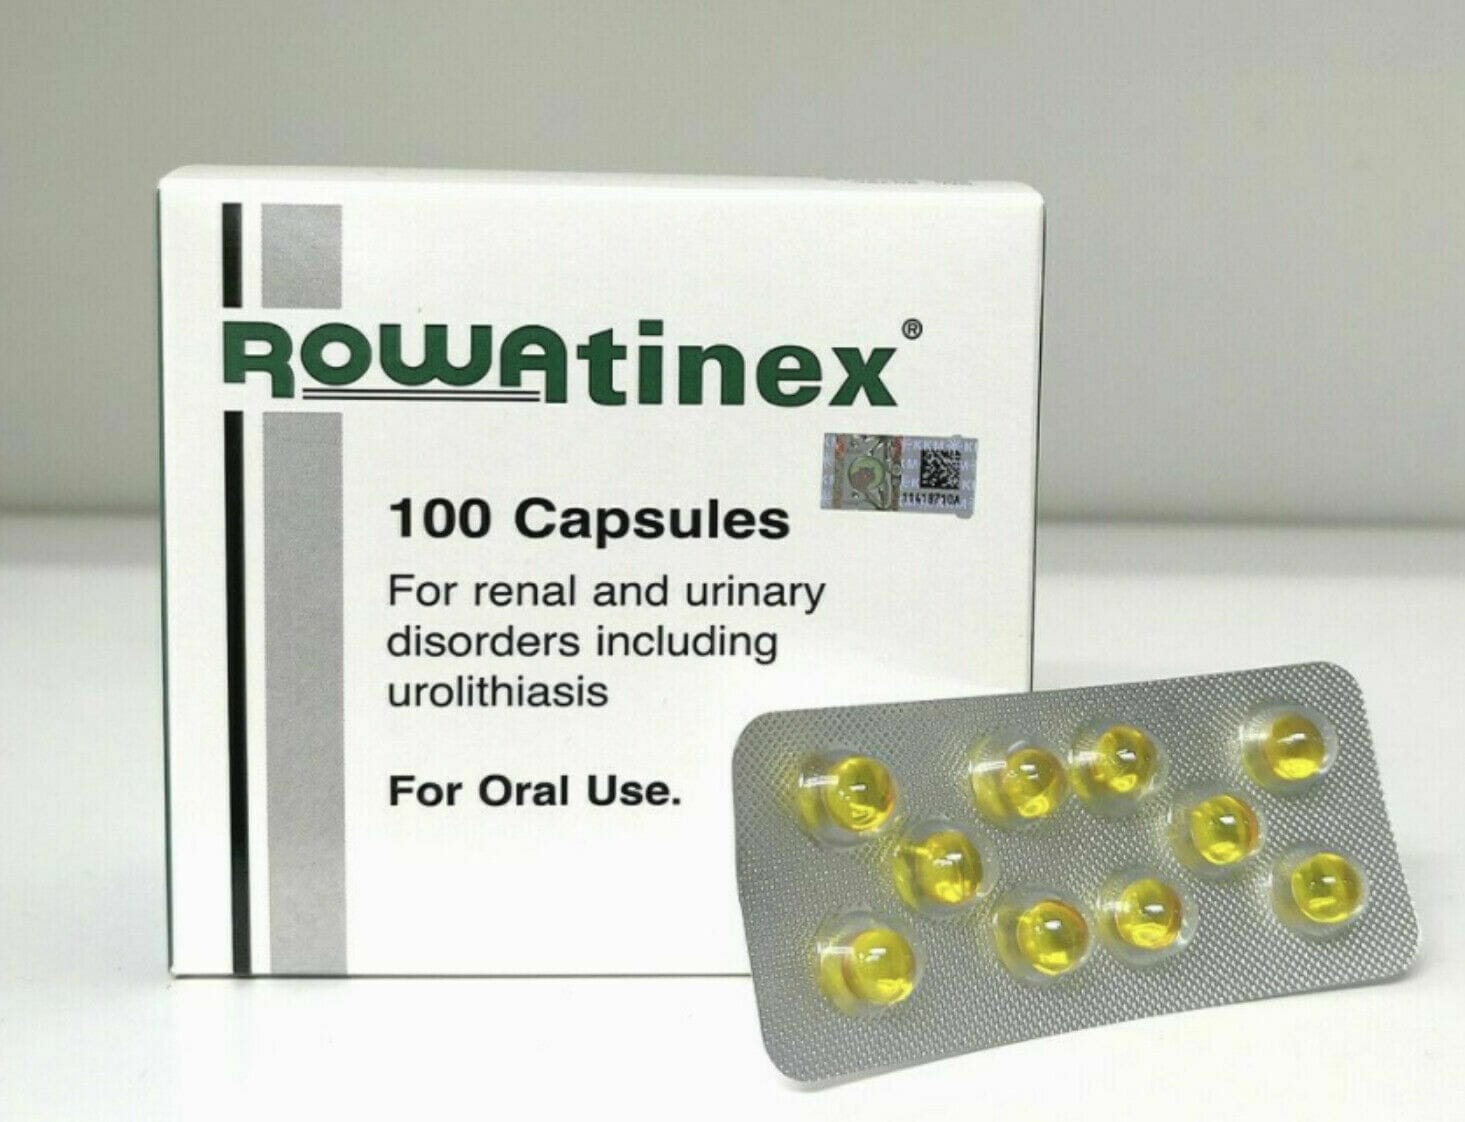 cajetín de pastillas de rowatinex